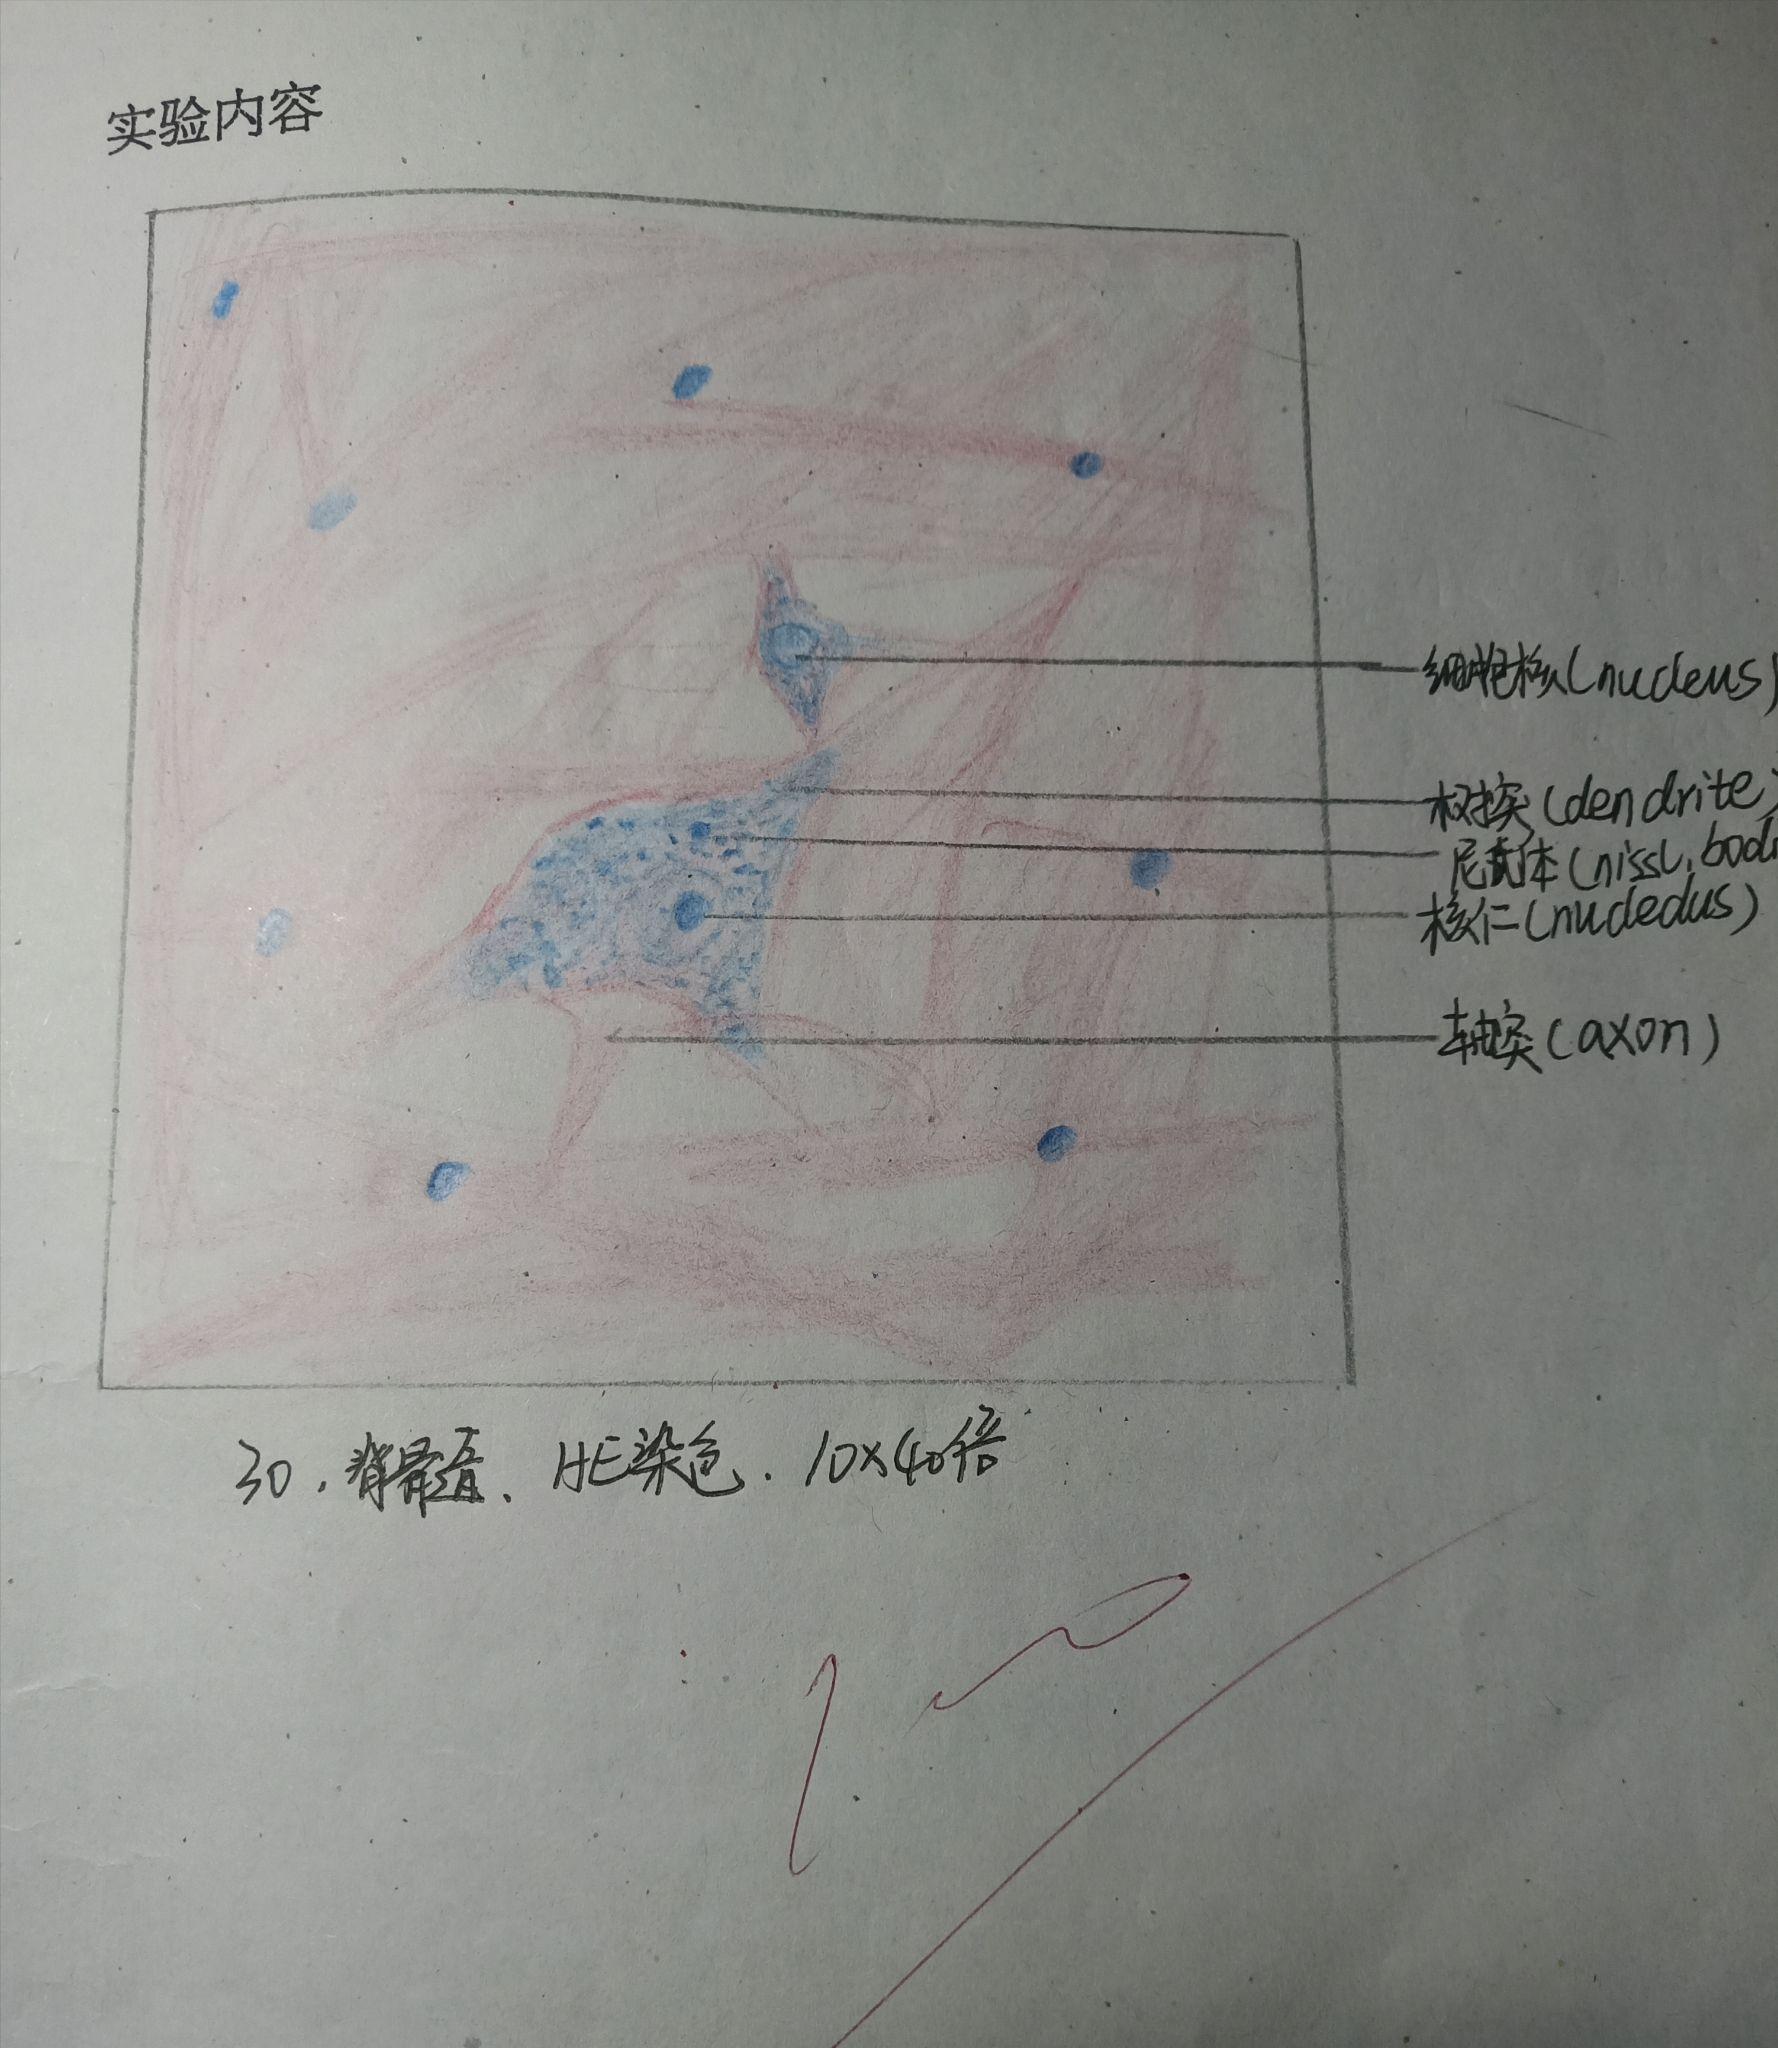 神经元红蓝学生手绘图图片